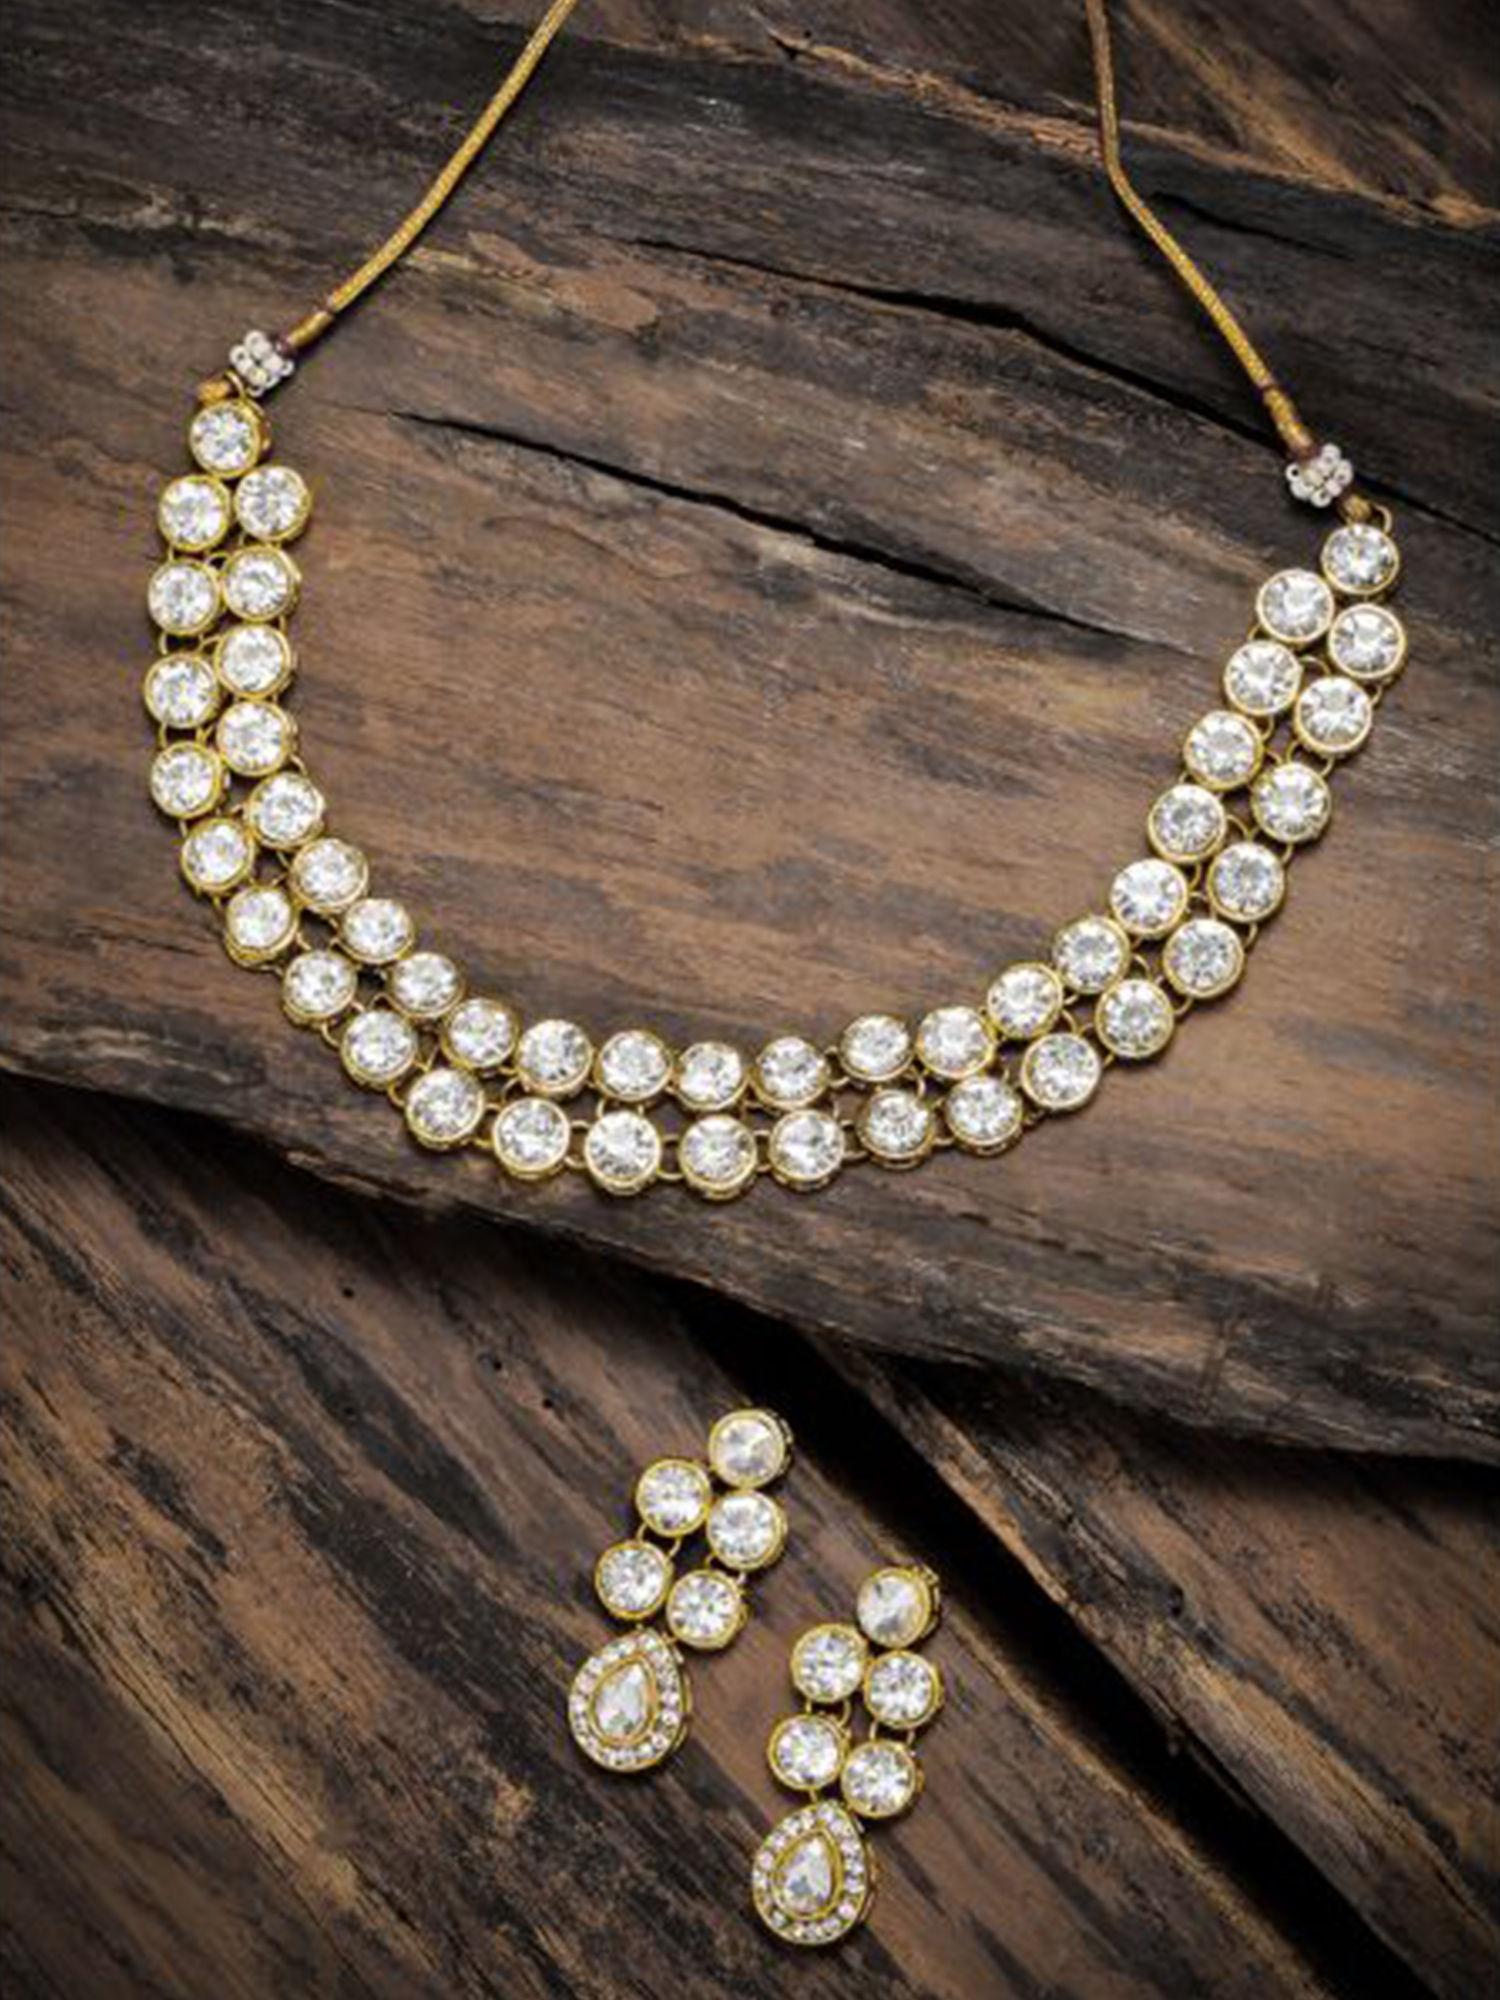 gold tone ethnic choker stones studded necklace set